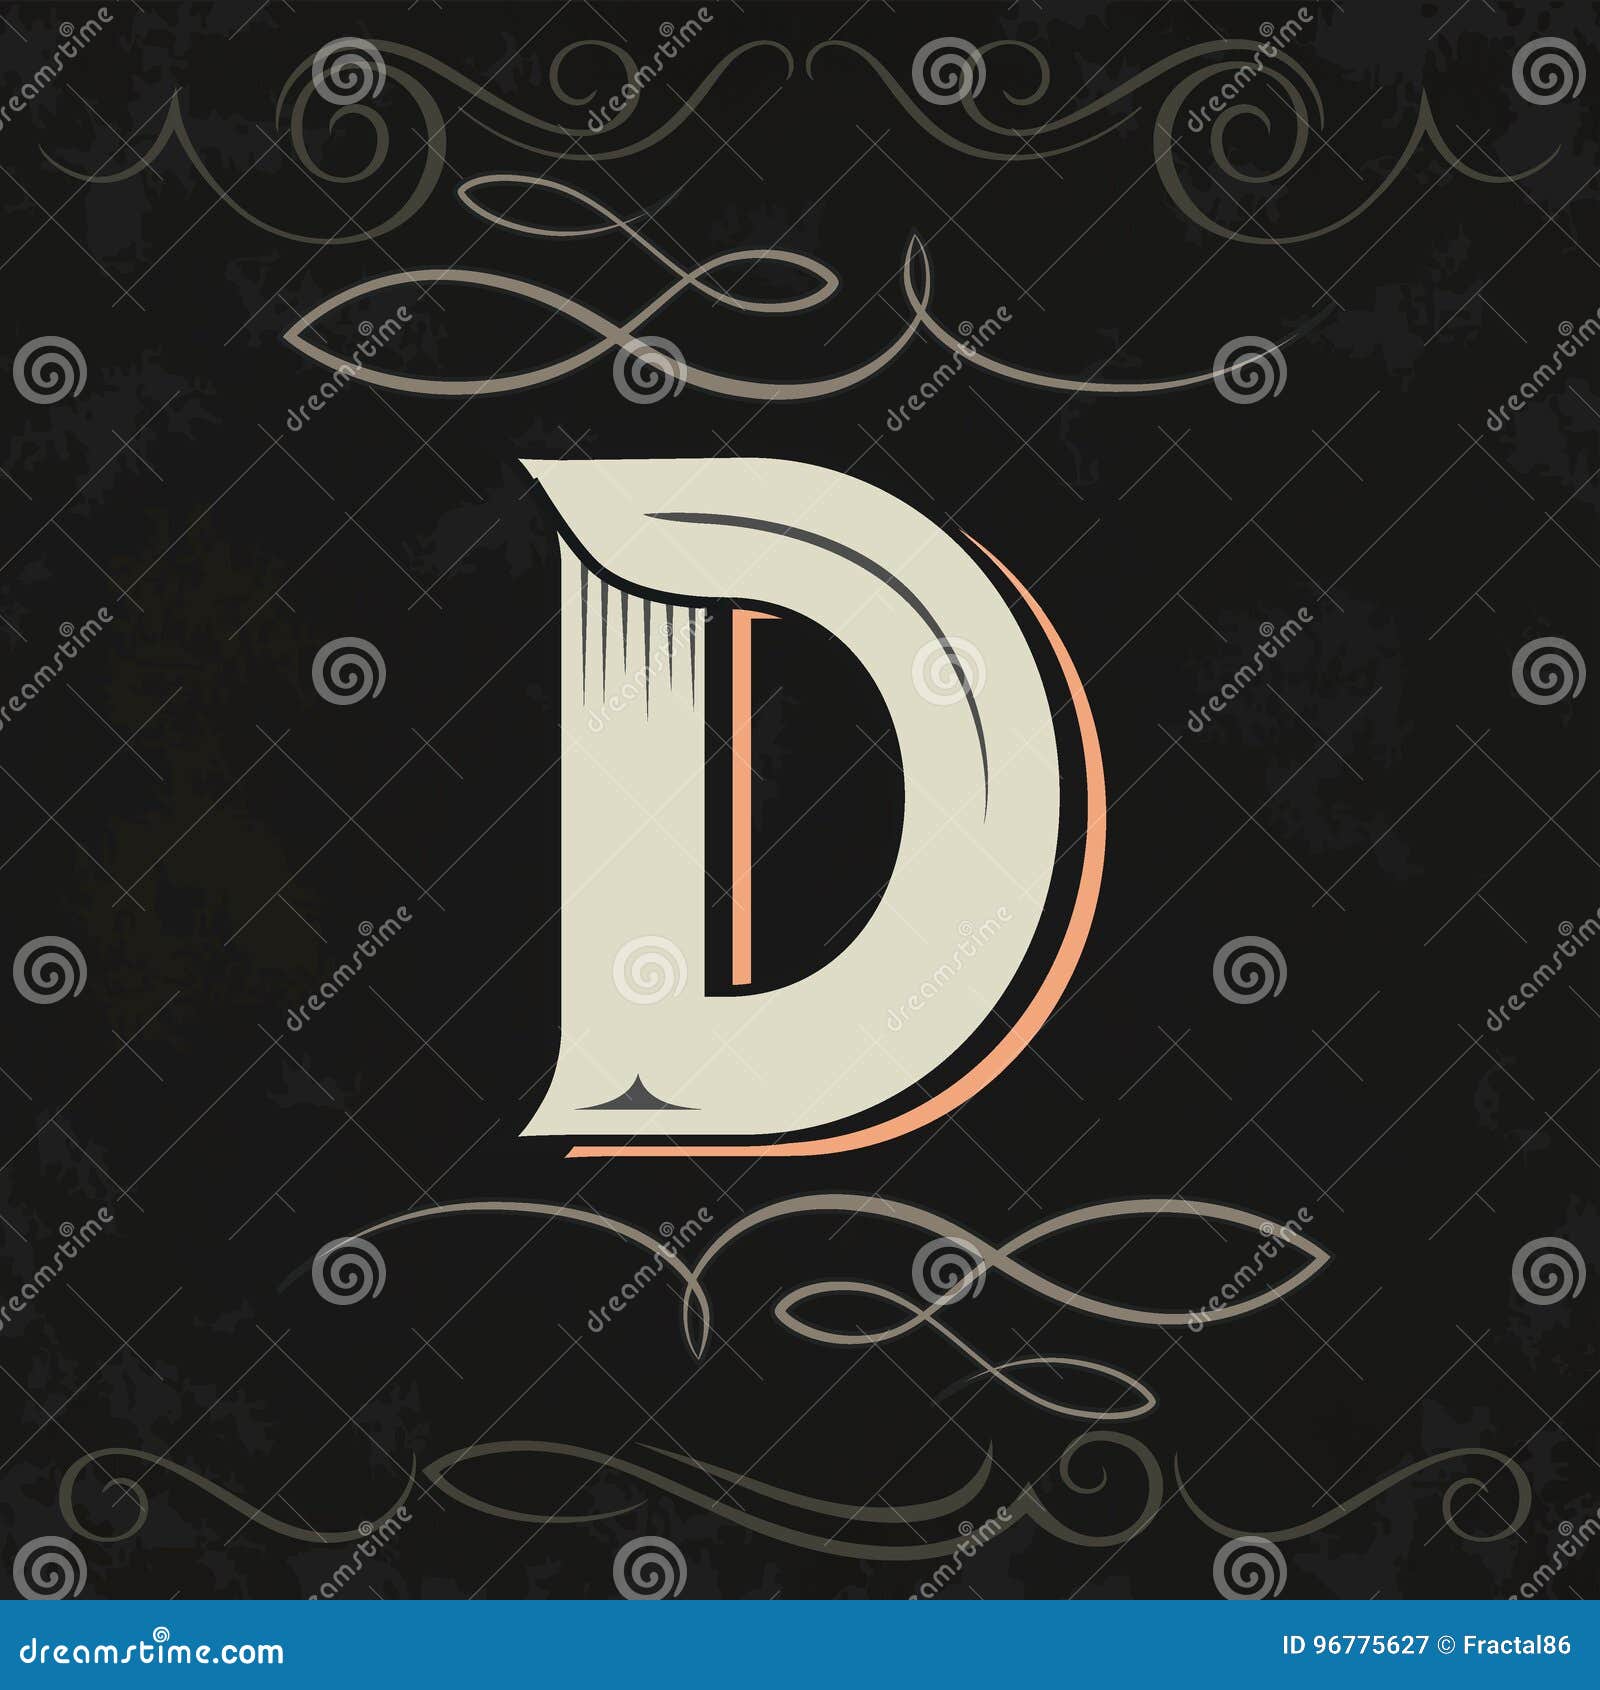 Retro Style. Western Letter Design. Letter D Stock Vector ...